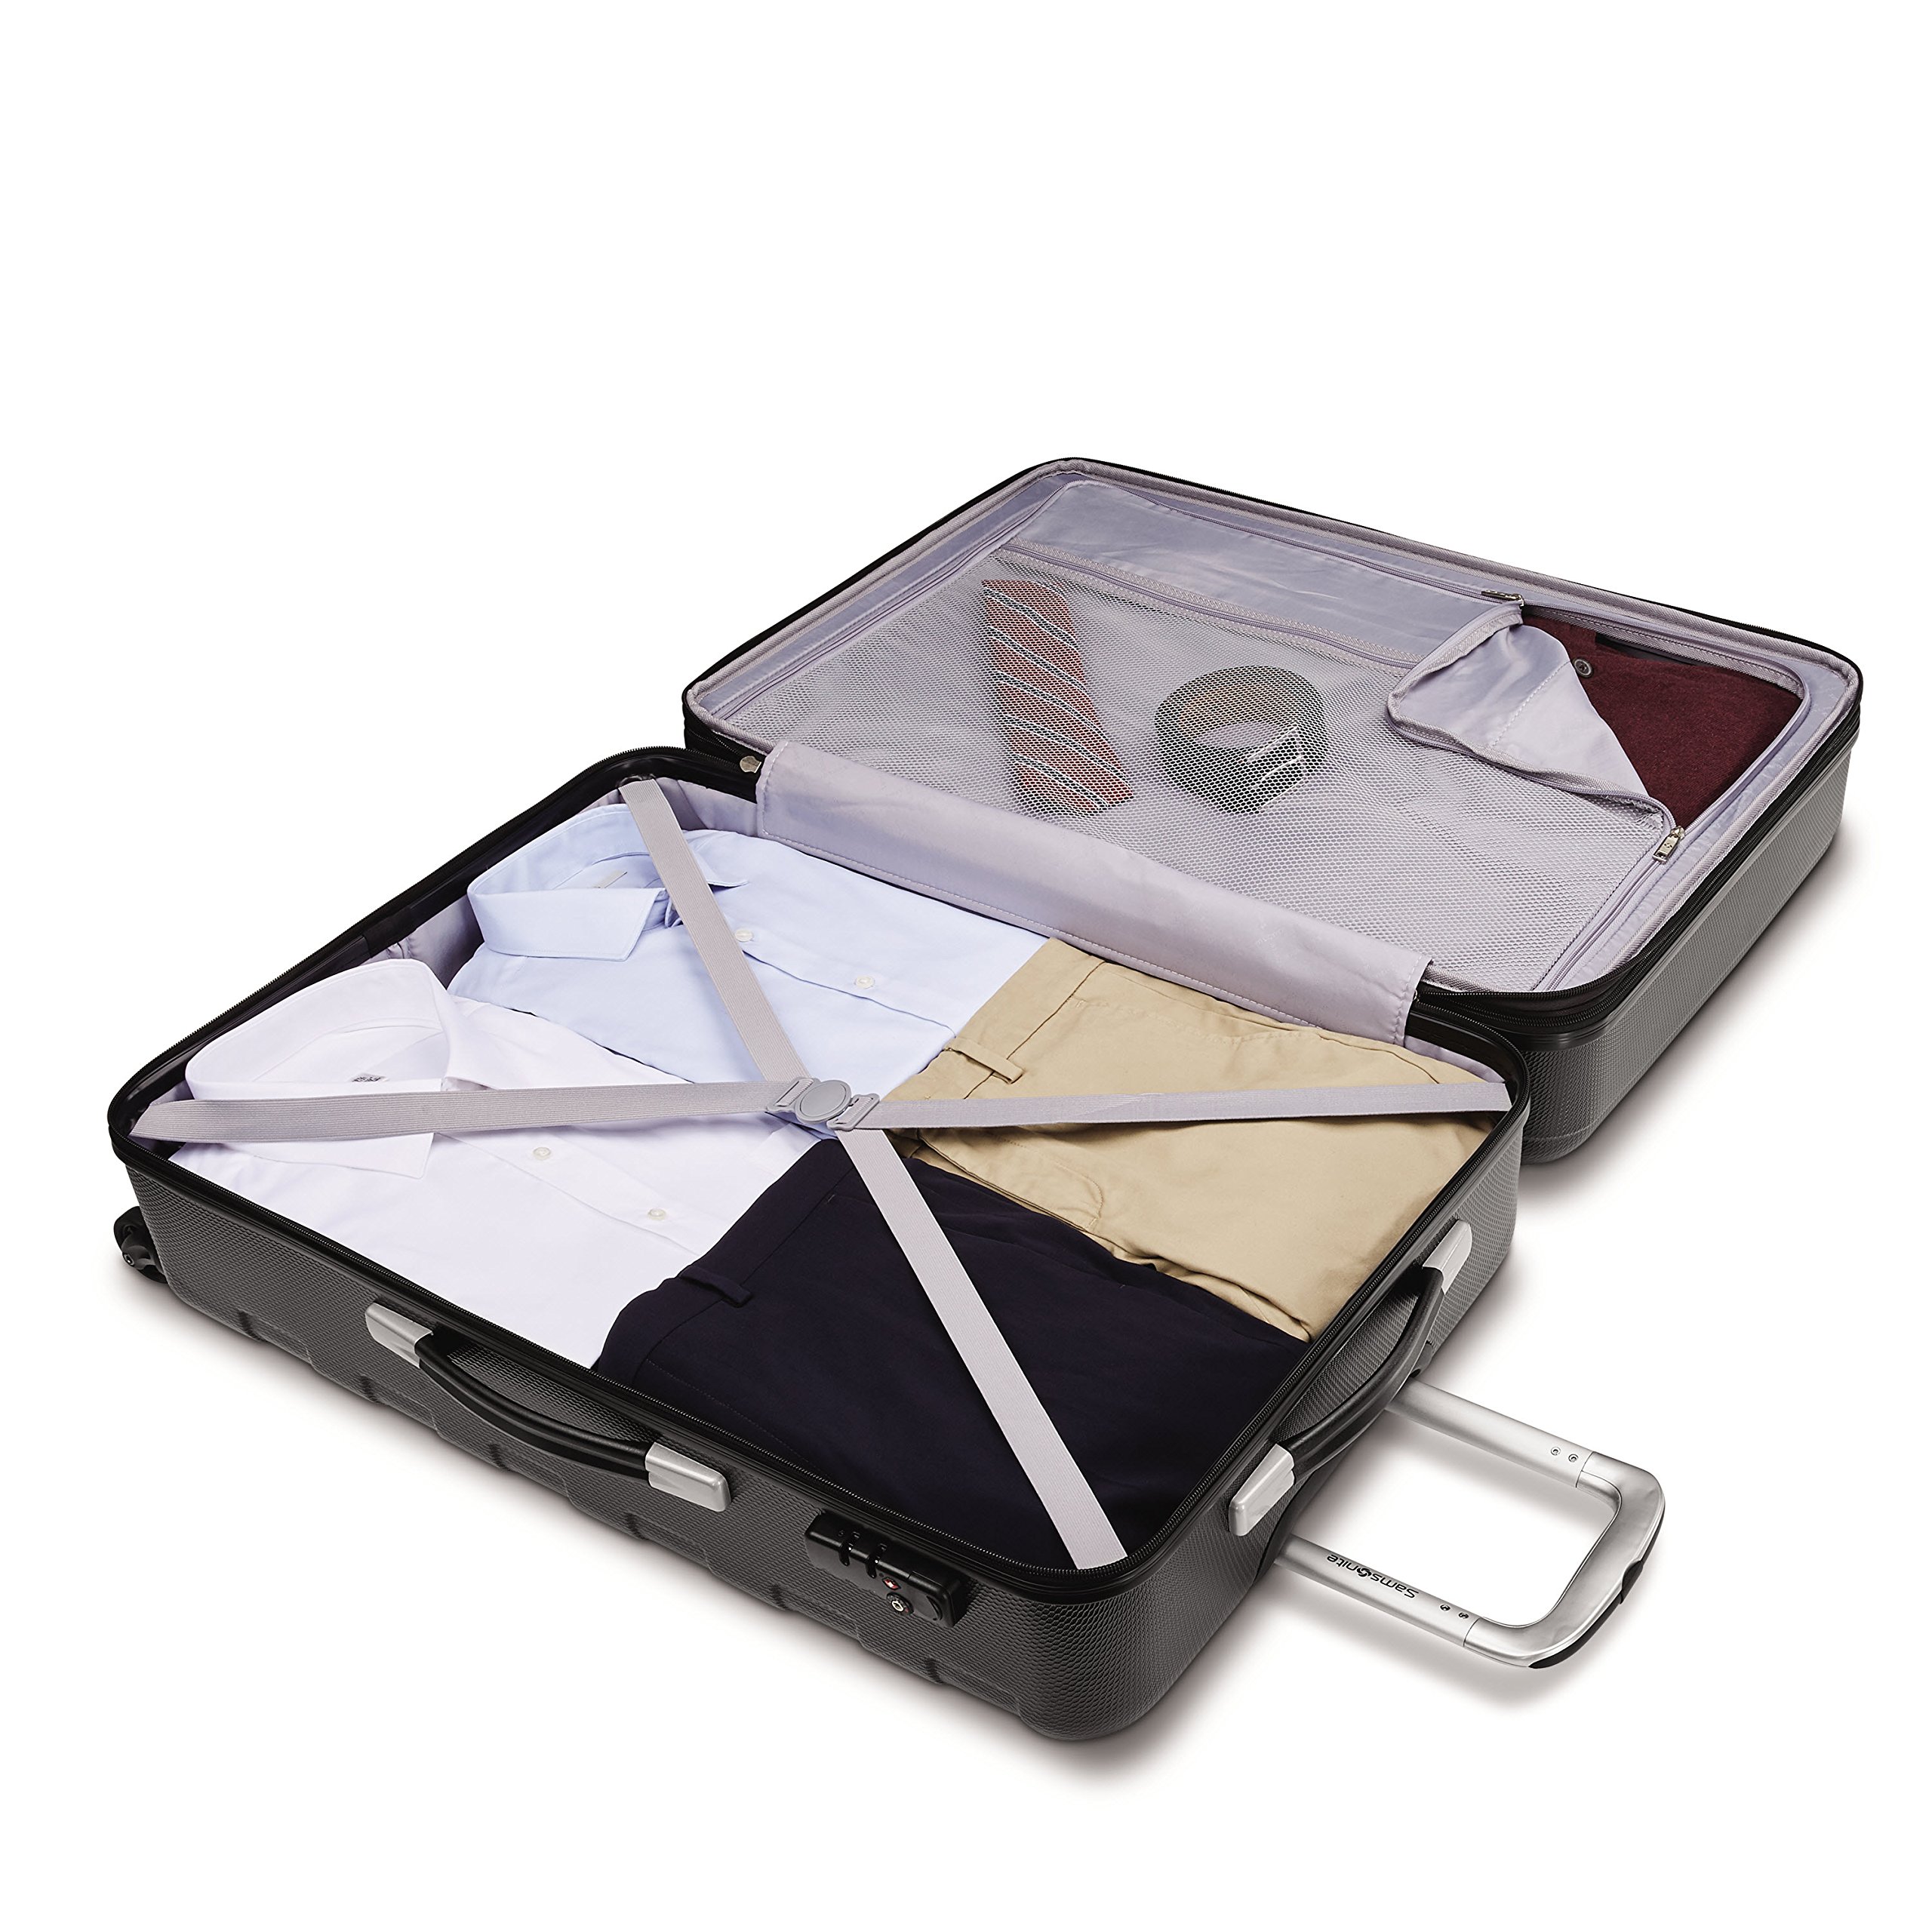 Samsonite Tread Lite Hardside Luggage, Black, 2-Piece Set (20/28)